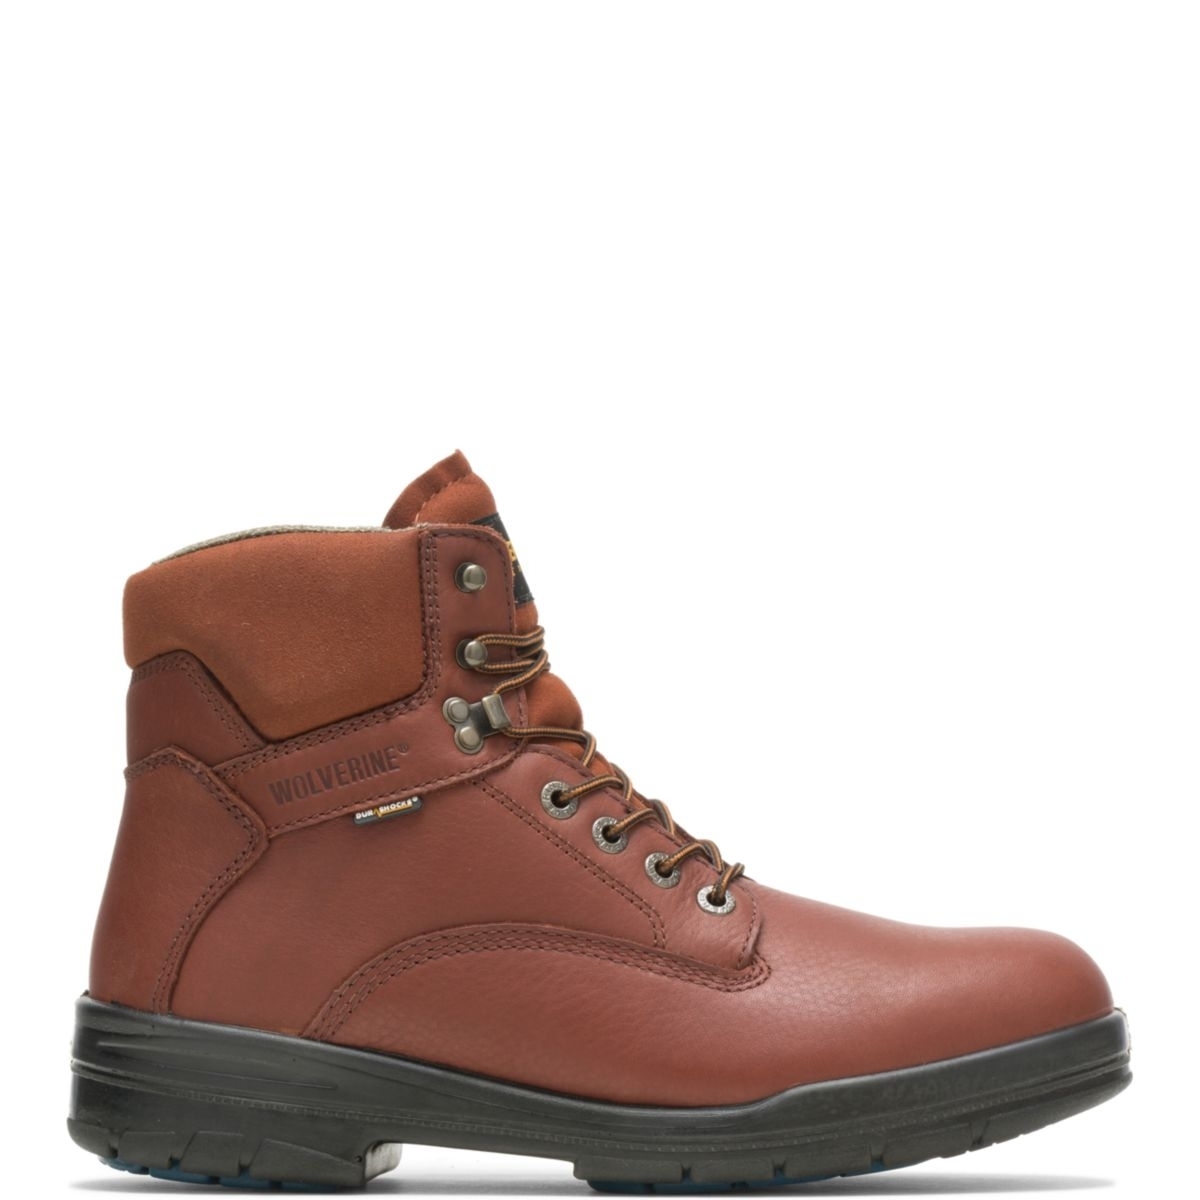 WOLVERINE Men's 6 DuraShocksÂ® Steel Toe Direct-Attach Work Boot Brown - W03120 BROWN - BROWN, 7.5-2E